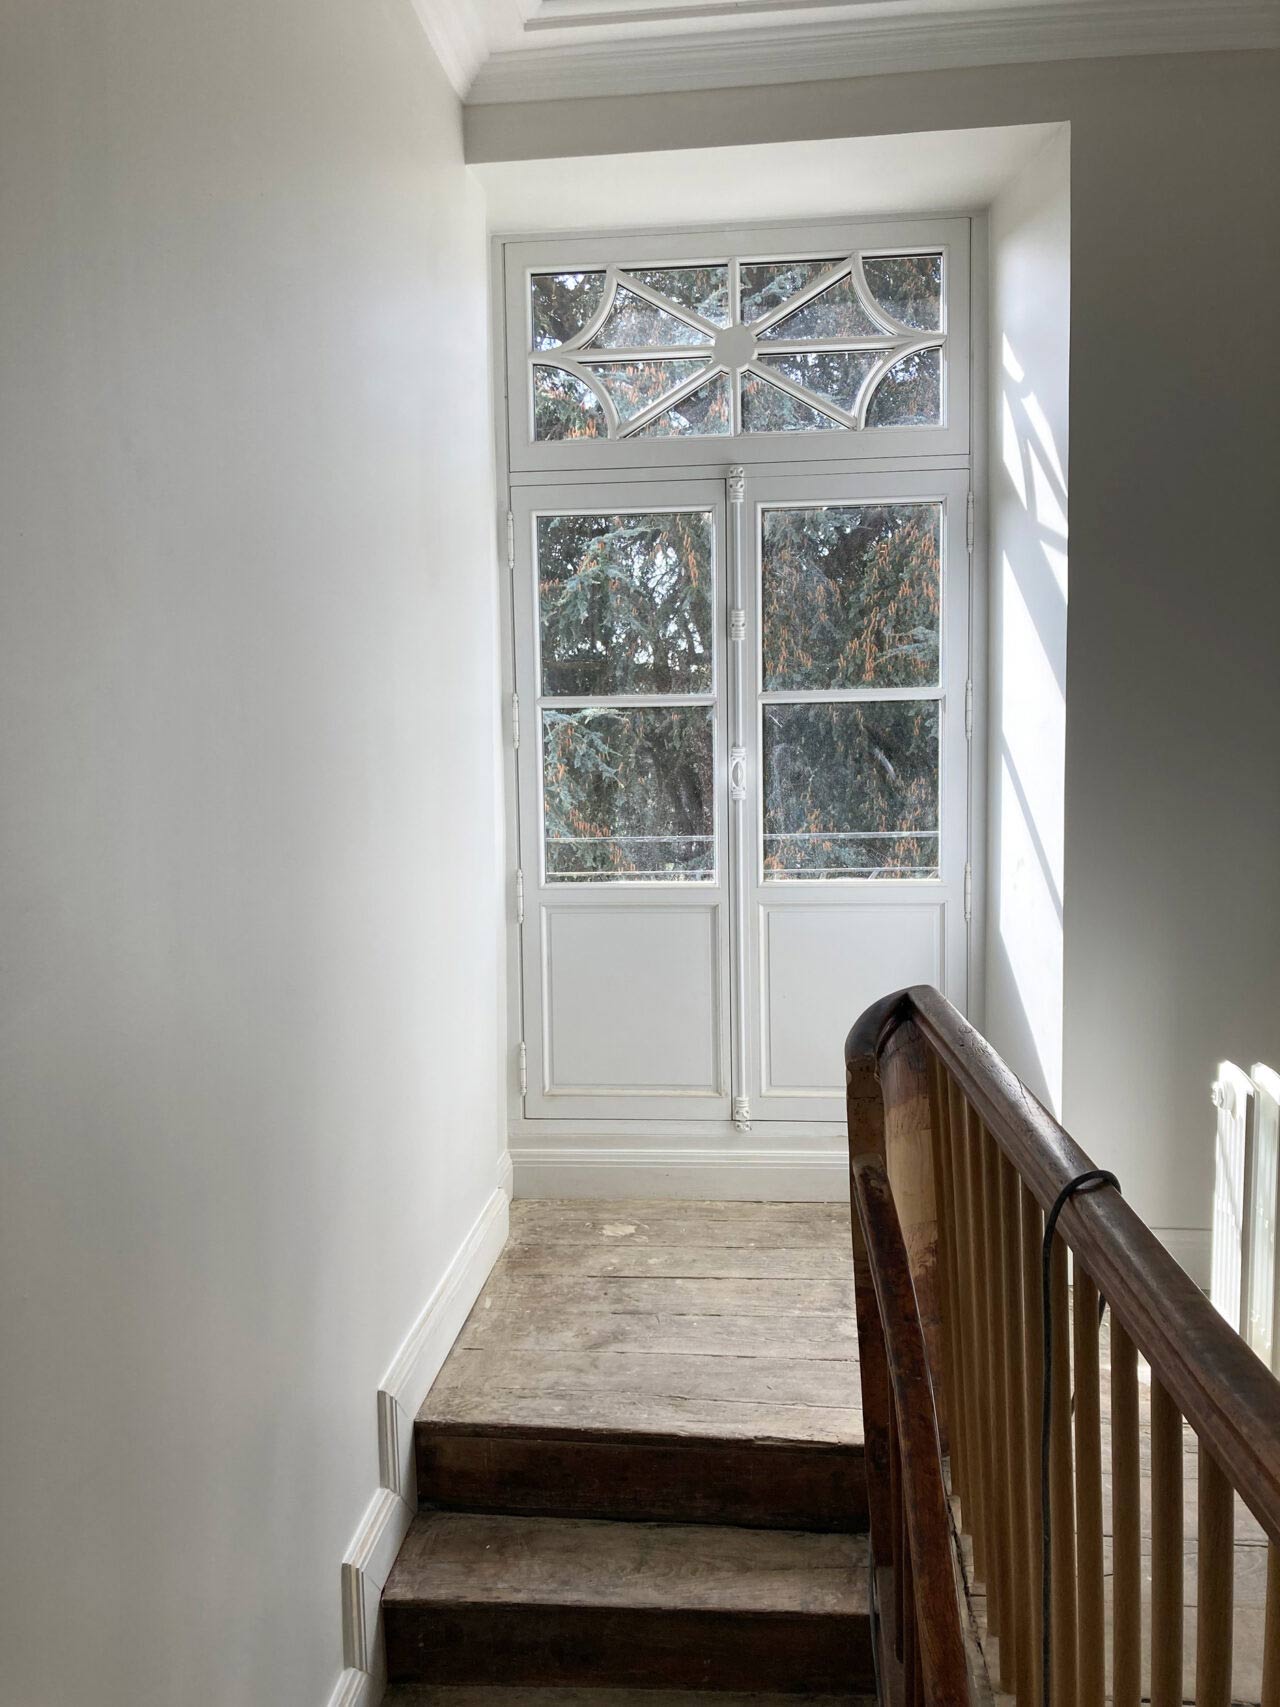 New bespoke balcony door, painted white.